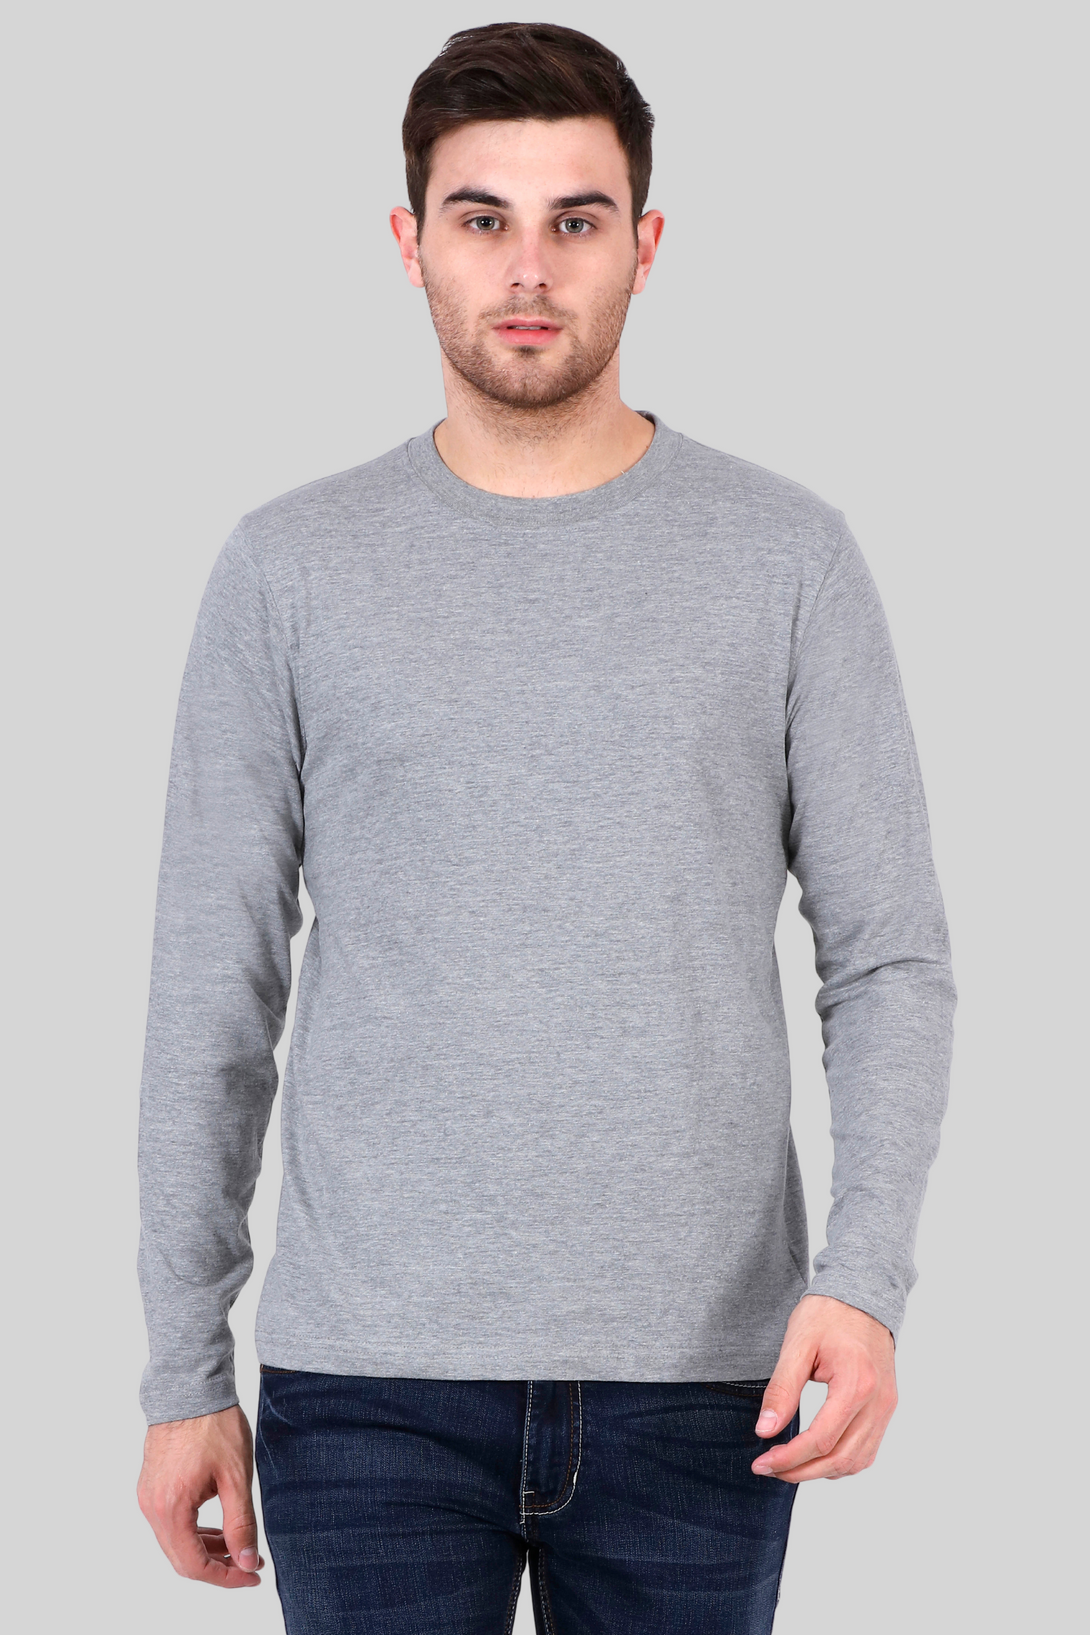 Grey Melange Full Sleeve T-Shirt For Men - WowWaves - 6